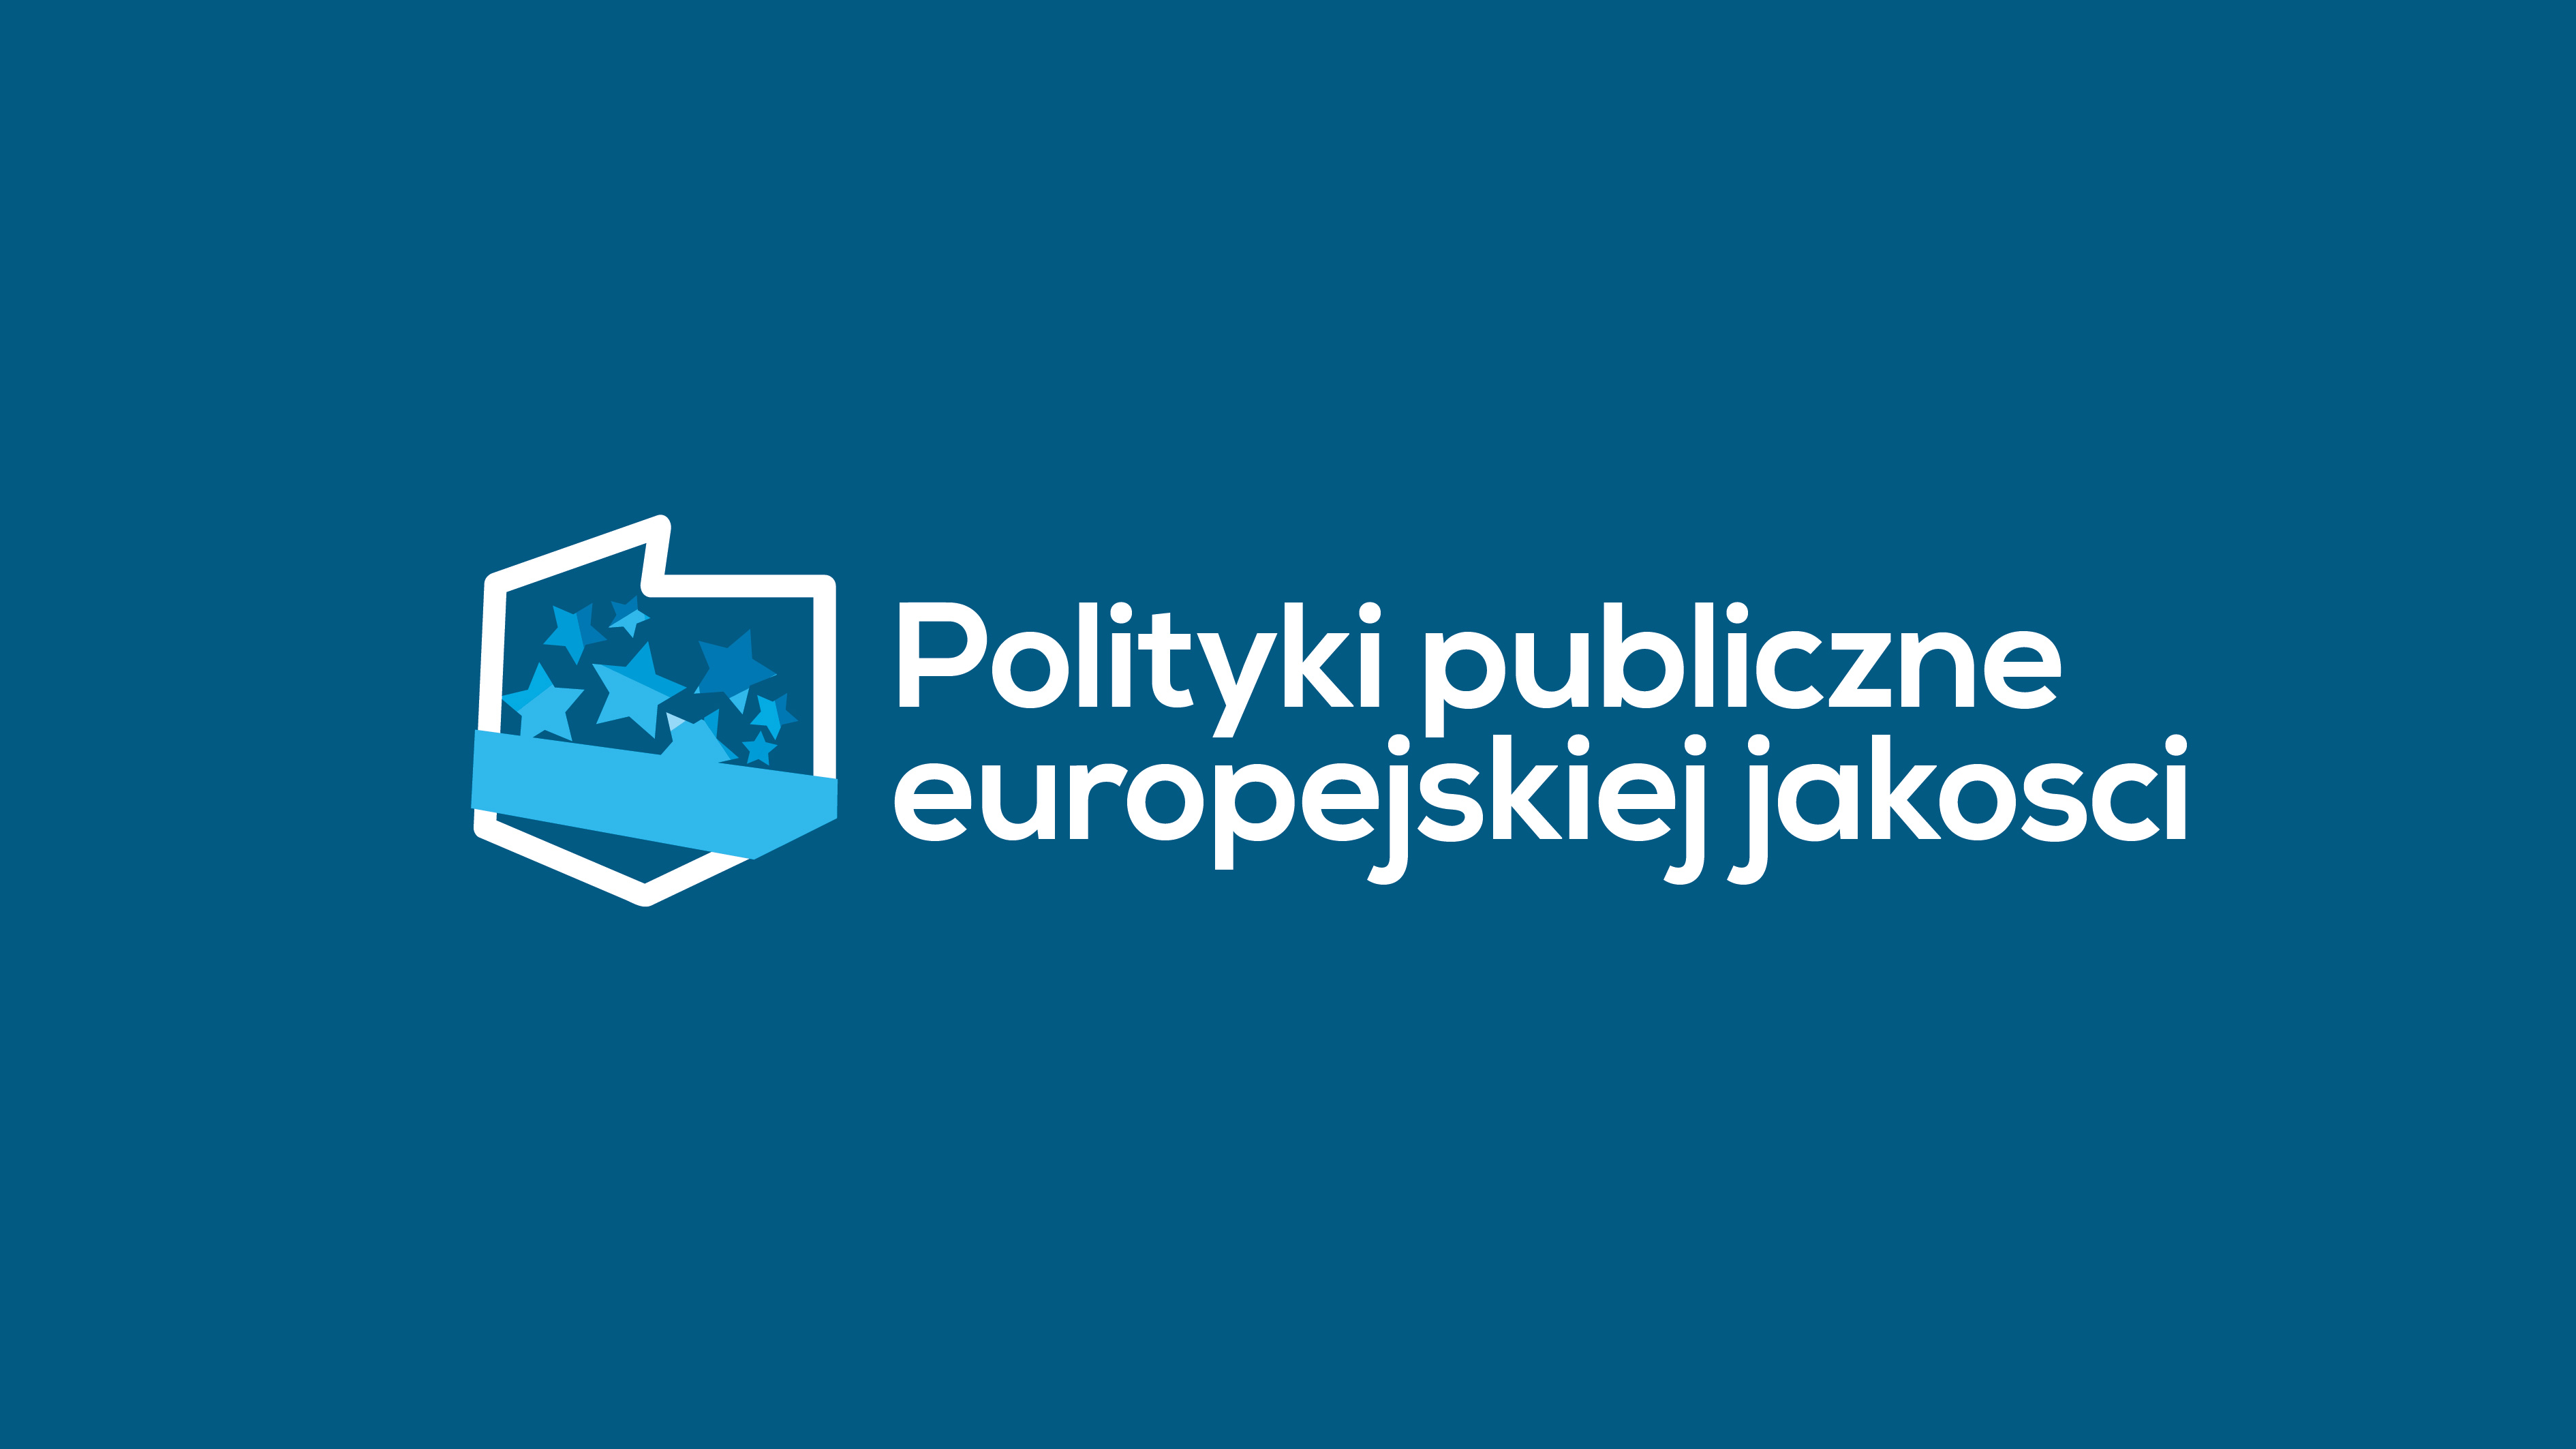 Publikujemy odpowiedzi na pytania oferenta dotyczące zapytania nr 2/PPEJ/2016/ESWIP w ramach projektu „Polityki publiczne europejskiej jakości” finansowanego ze środków Unii Europejskiej w ramach Europejskiego Funduszu Społecznego.